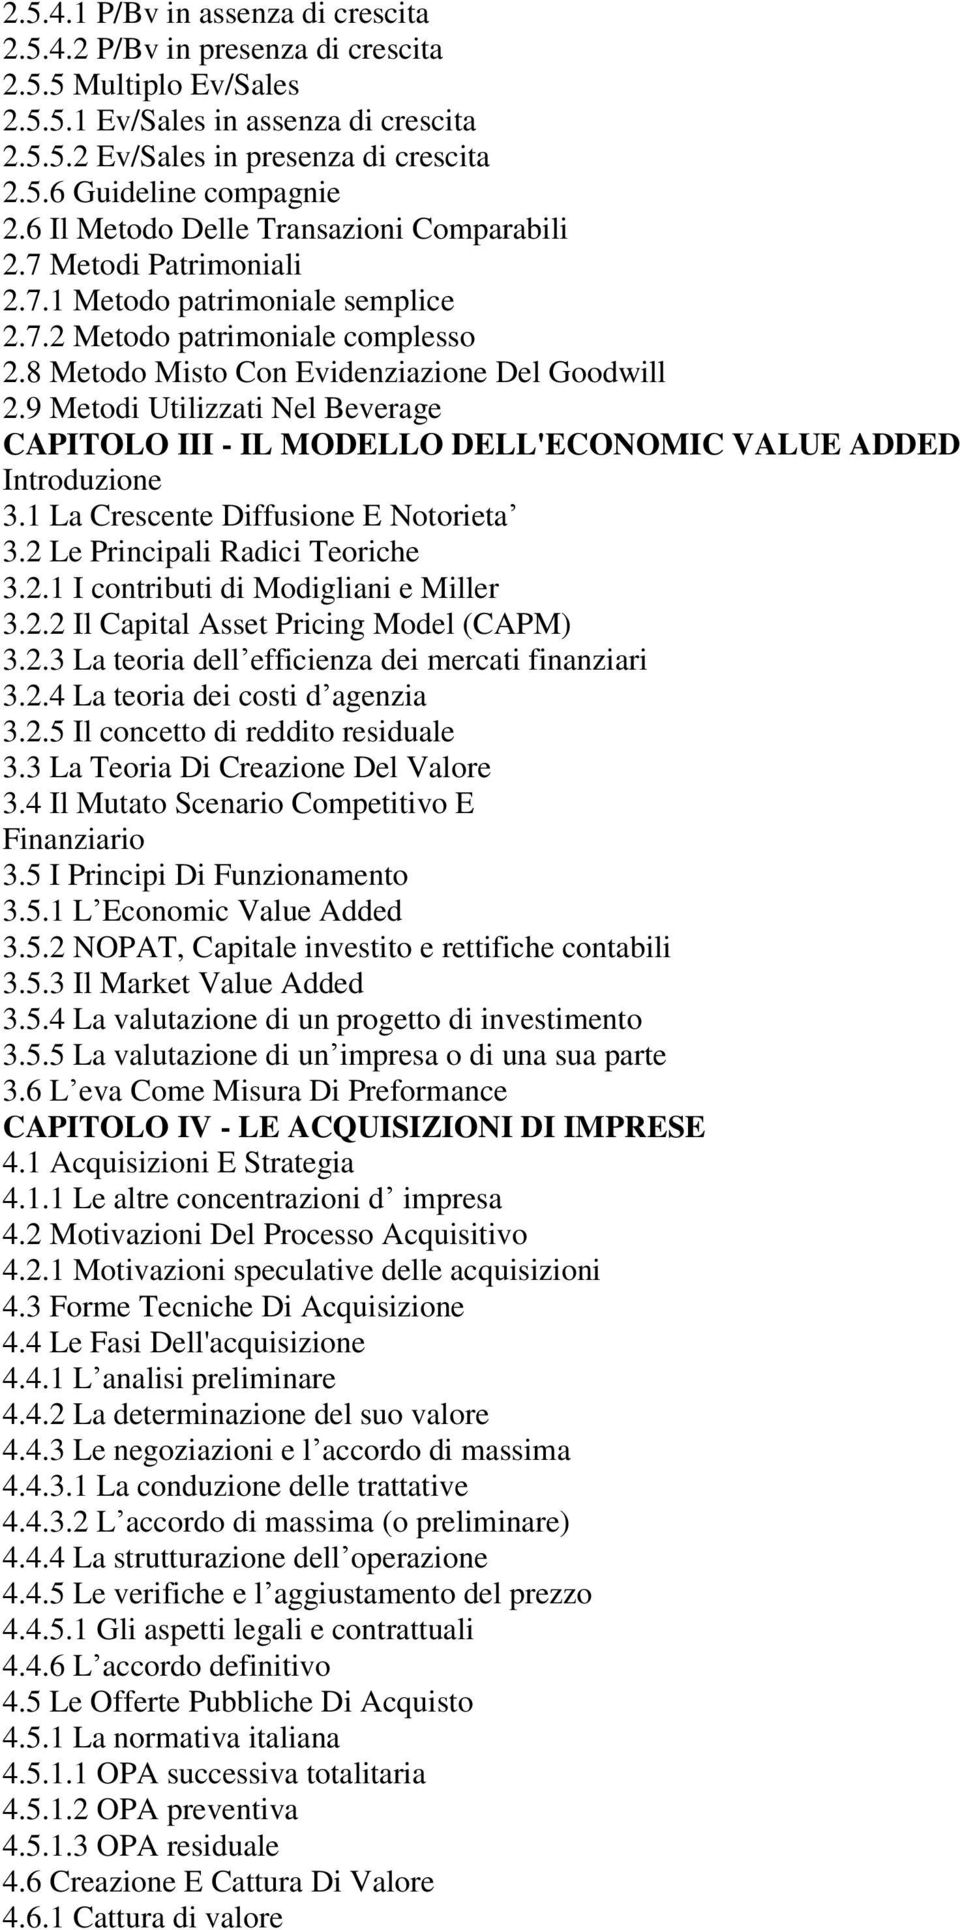 9 Metodi Utilizzati Nel Beverage CAPITOLO III - IL MODELLO DELL'ECONOMIC VALUE ADDED Introduzione 3.1 La Crescente Diffusione E Notorieta 3.2 Le Principali Radici Teoriche 3.2.1 I contributi di Modigliani e Miller 3.